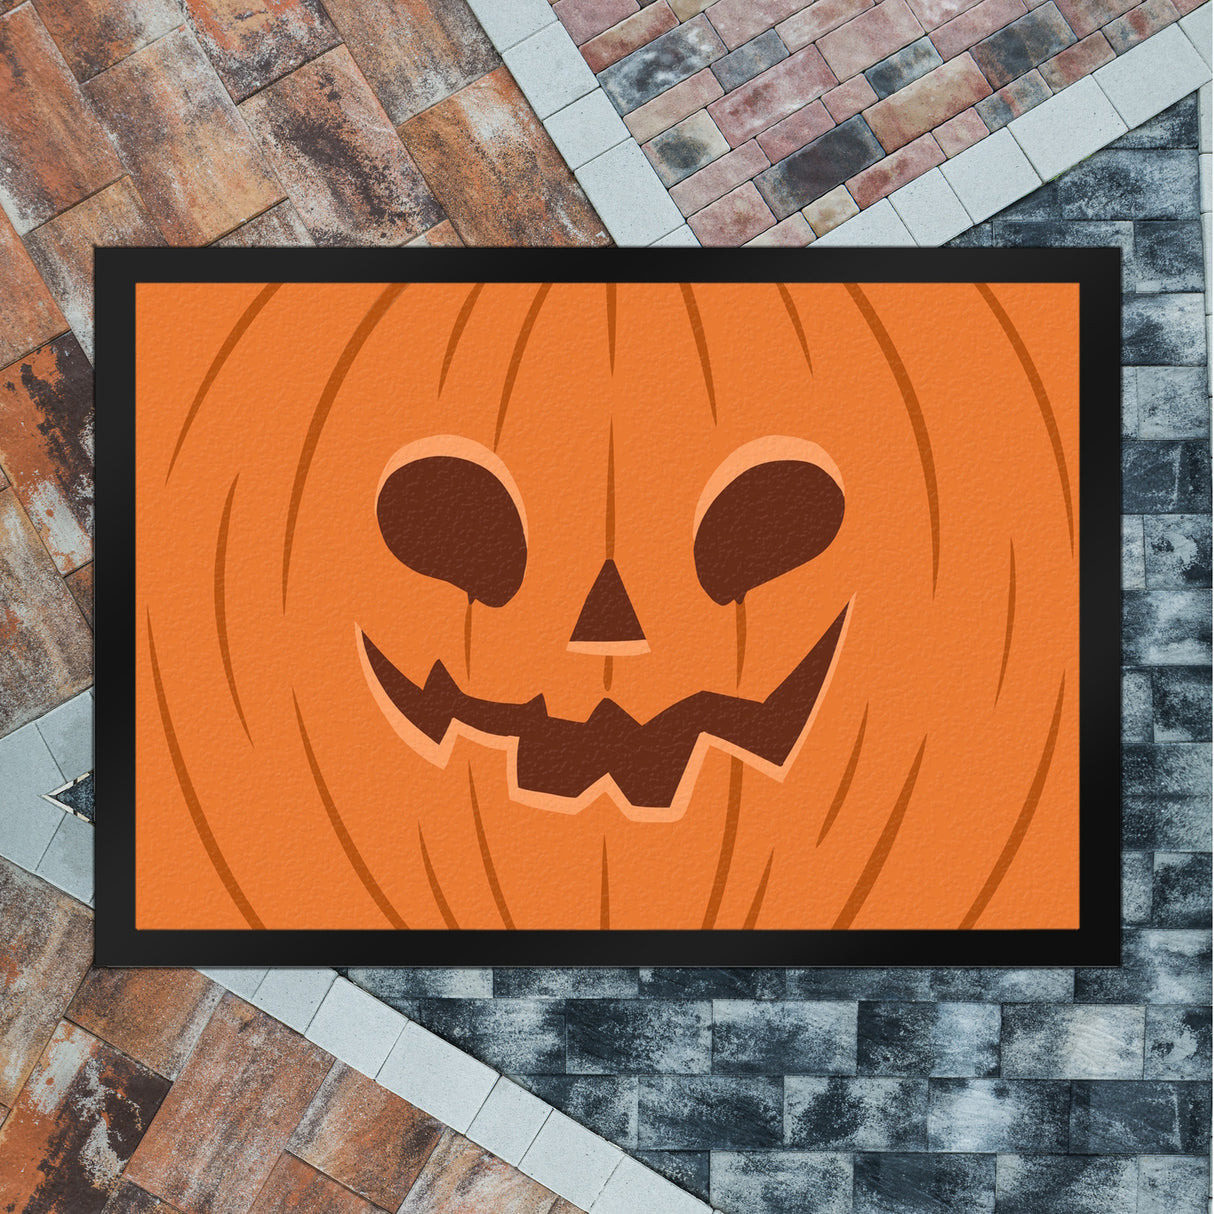 Fußmatte mit gruseligem Kürbiskopf Design für Halloween und die Herbstzeit